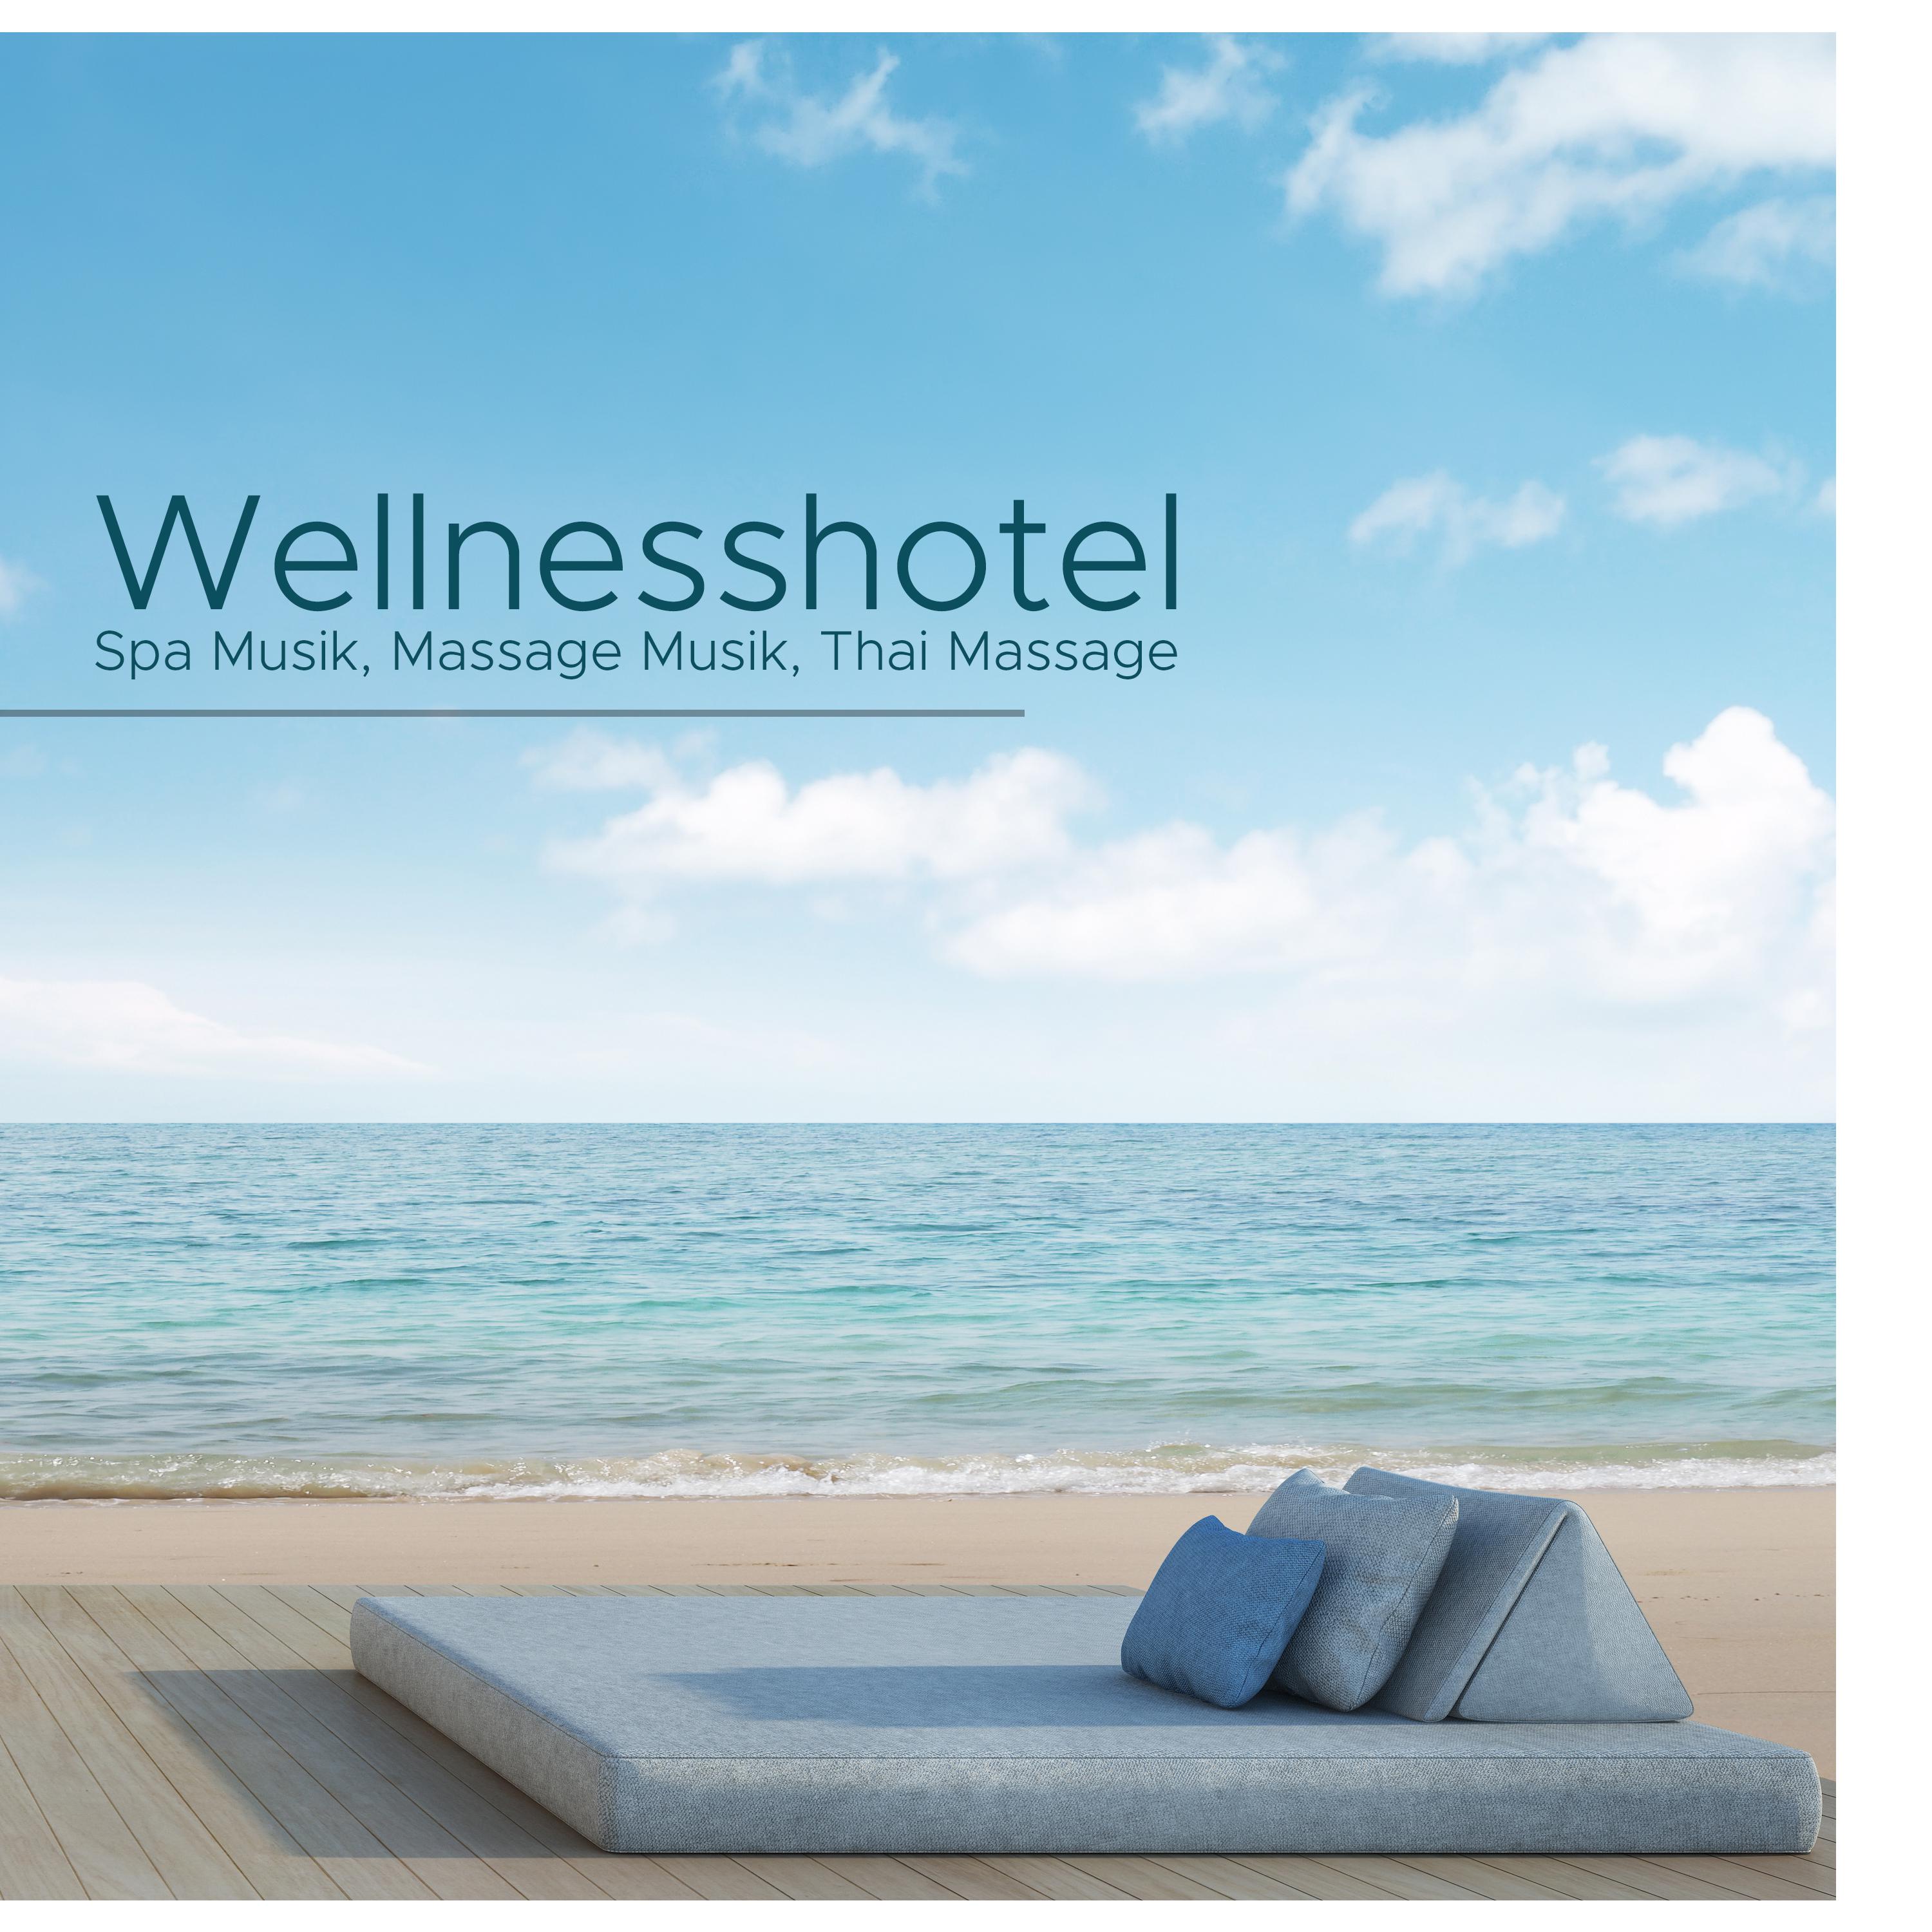 Wellnesshotel - Spa Musik, Massage Musik, Thai Massage, Sauna, Lounge, Entspannung und Meditation